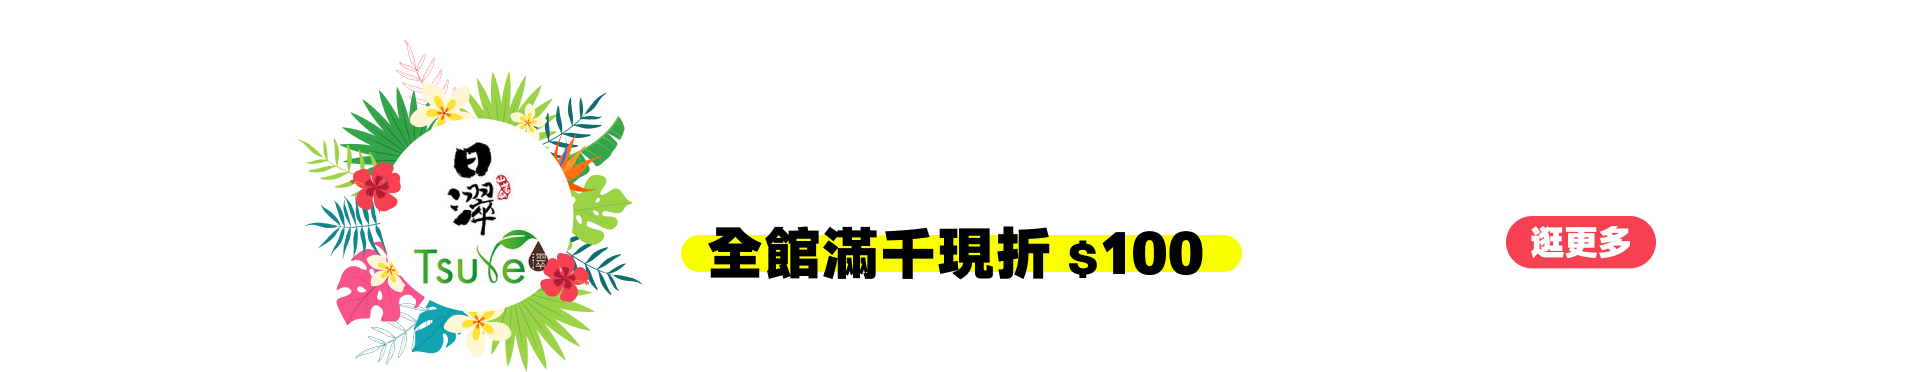 日濢 Tsuie pc